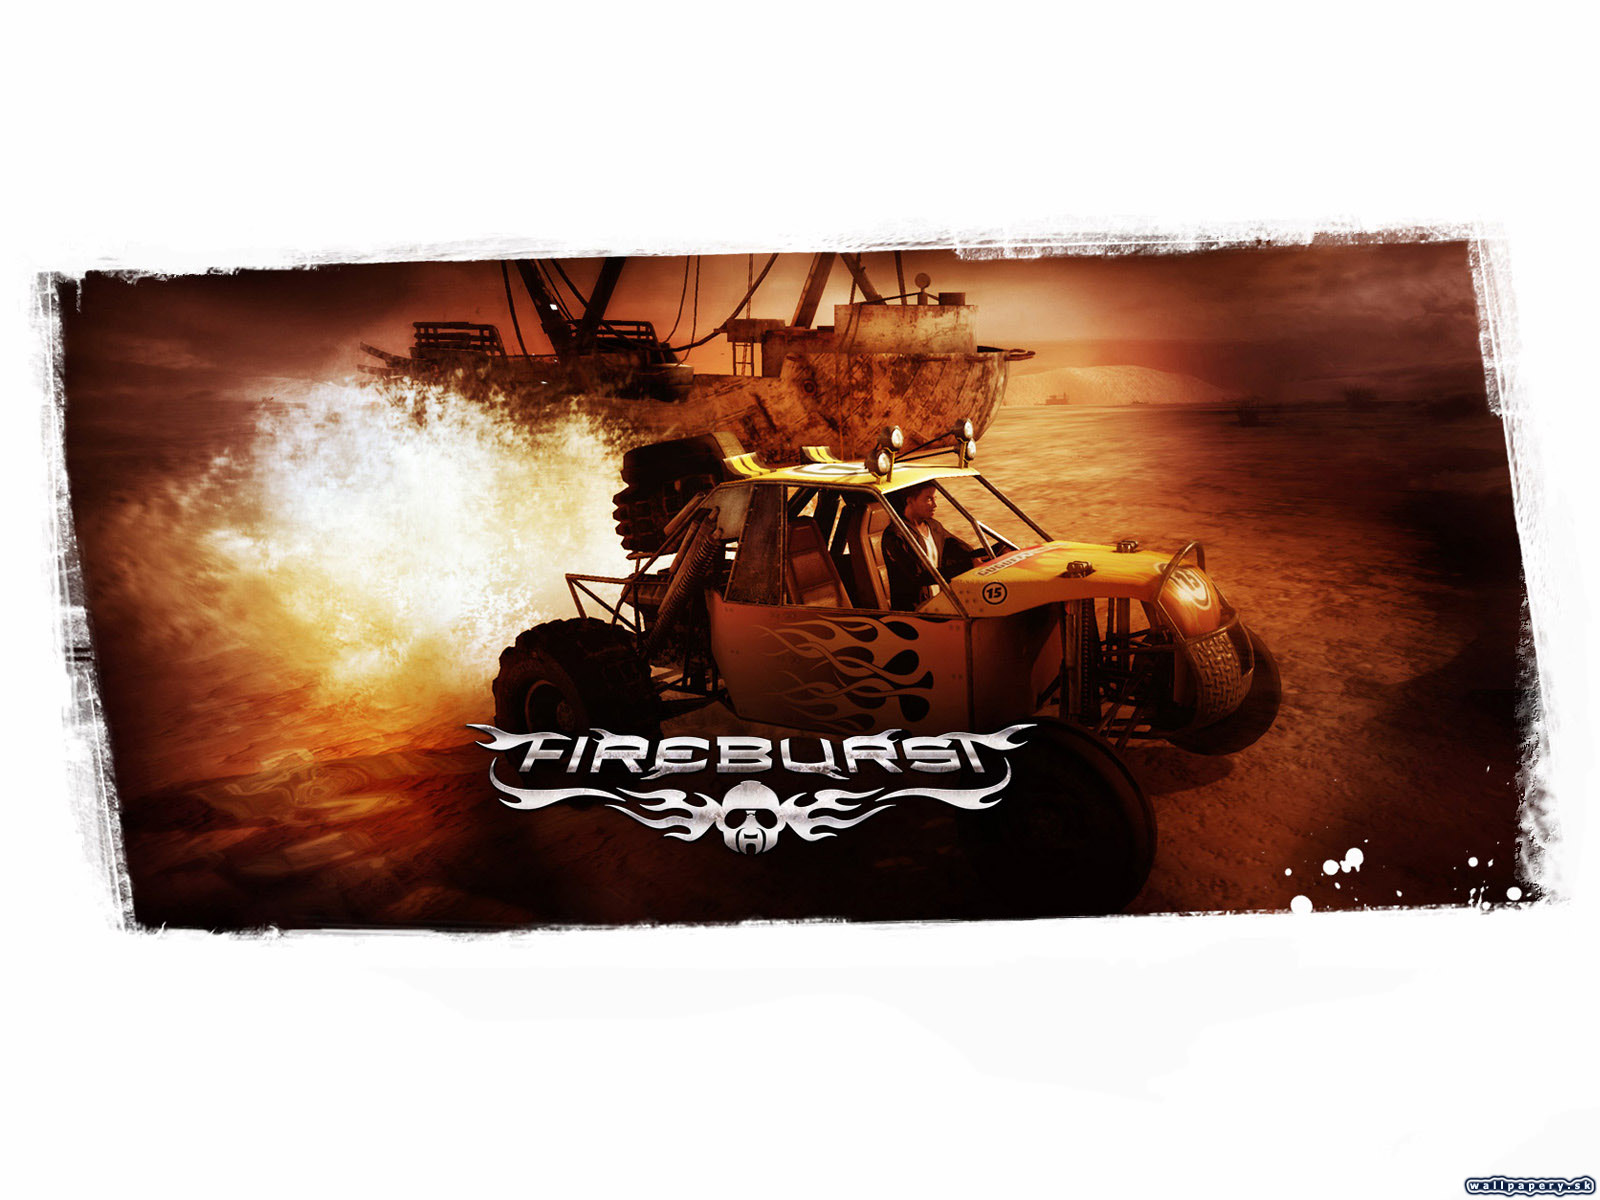 Fireburst - wallpaper 4